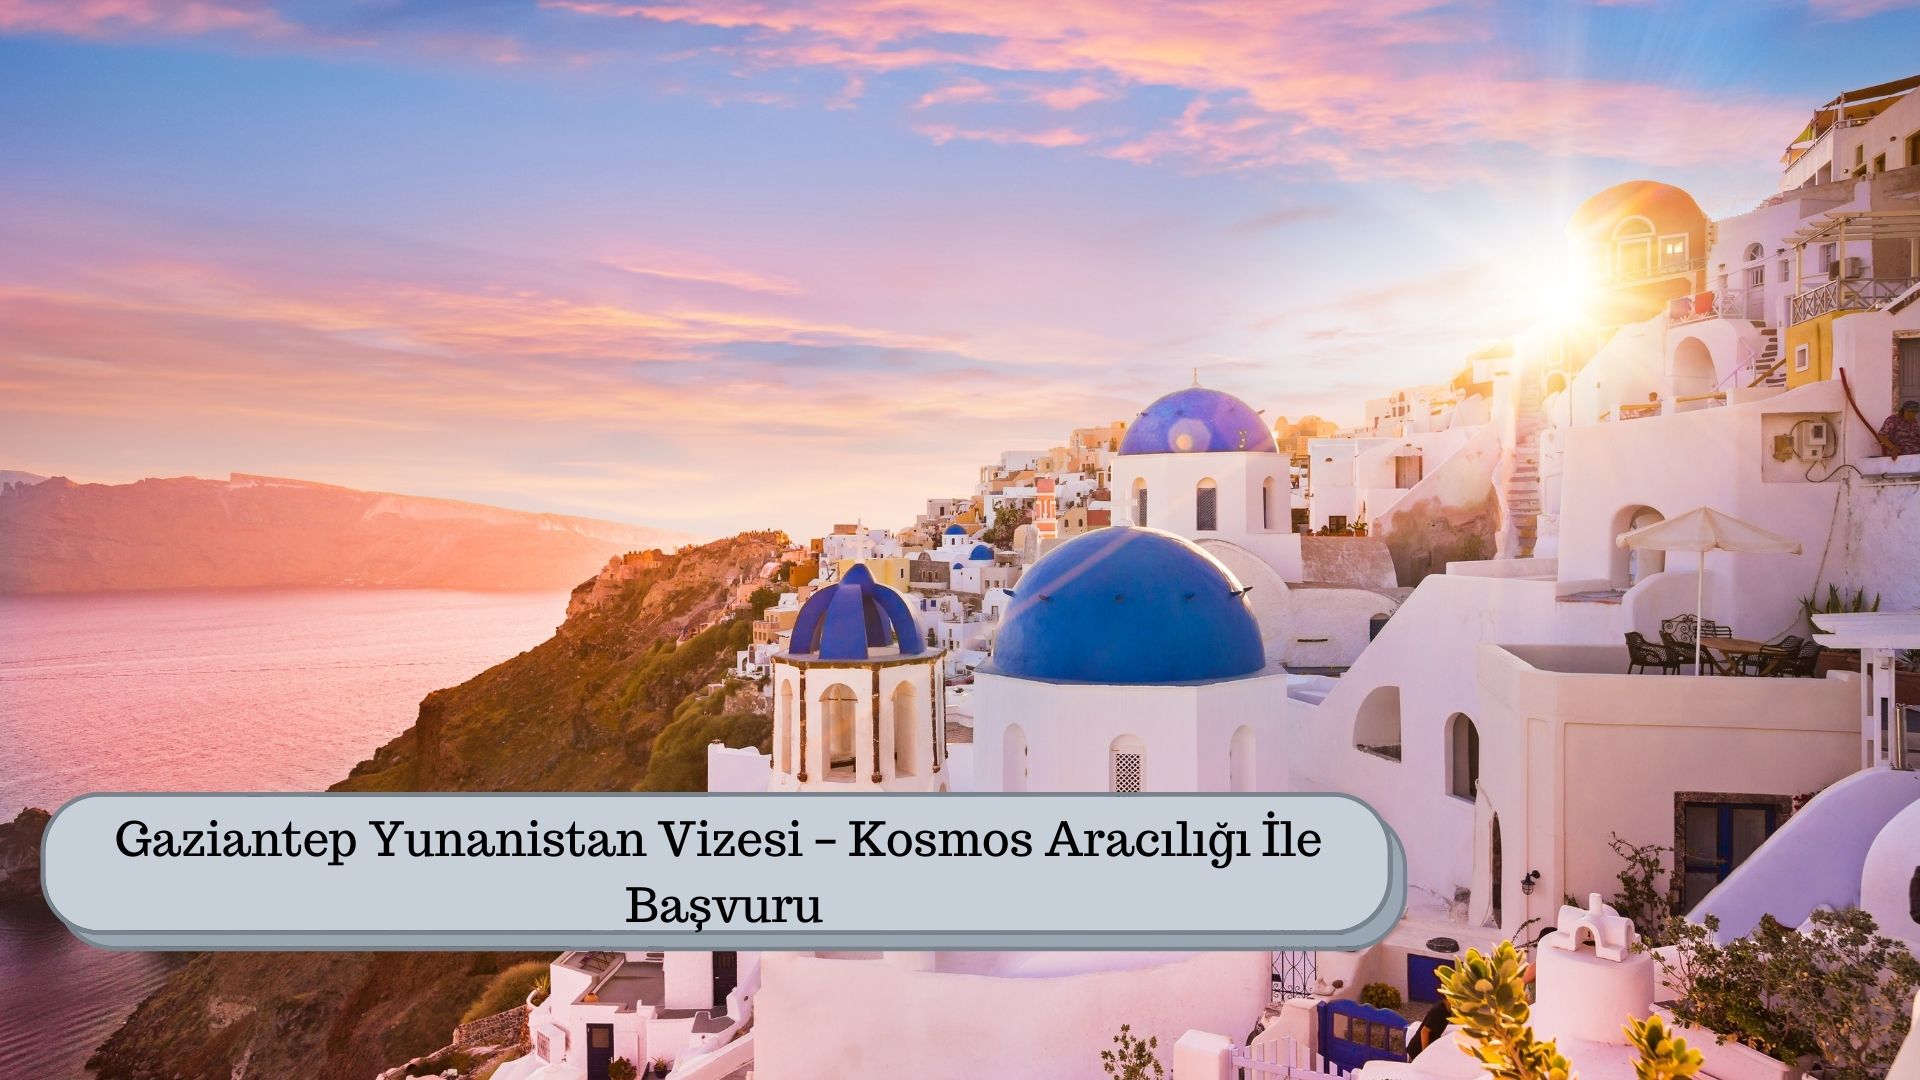 Gaziantep Yunanistan Vizesi – Kosmos Aracılığı İle Başvuru